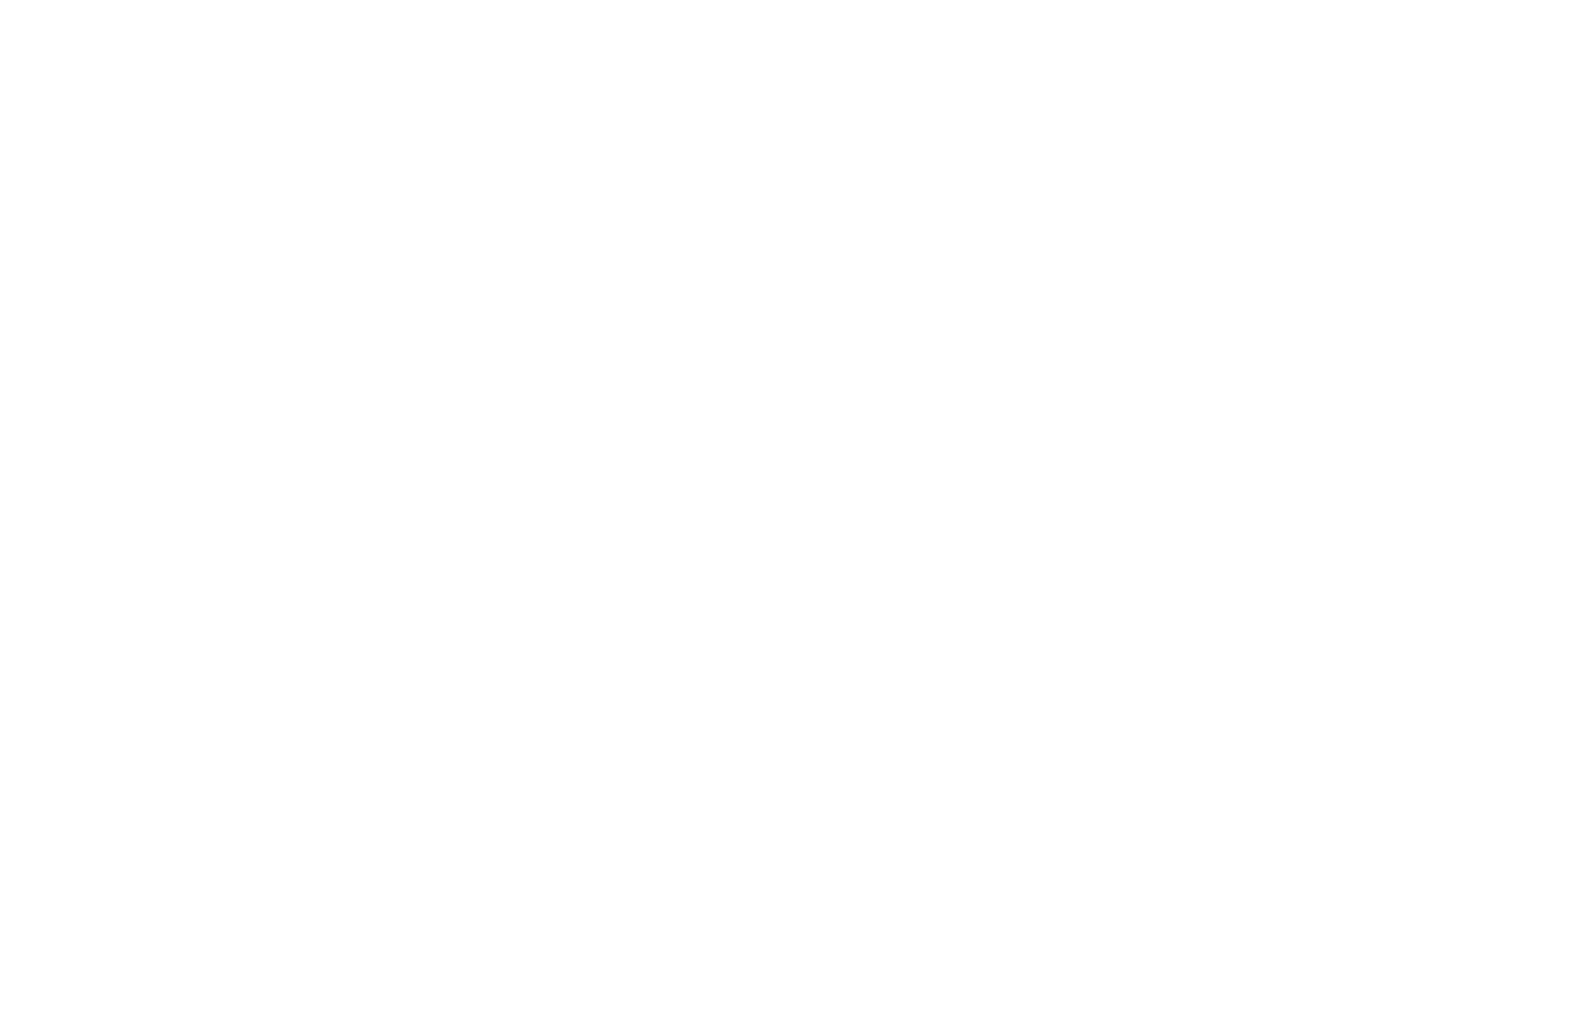 BillerudKorsnäs logo pour fonds sombres (PNG transparent)